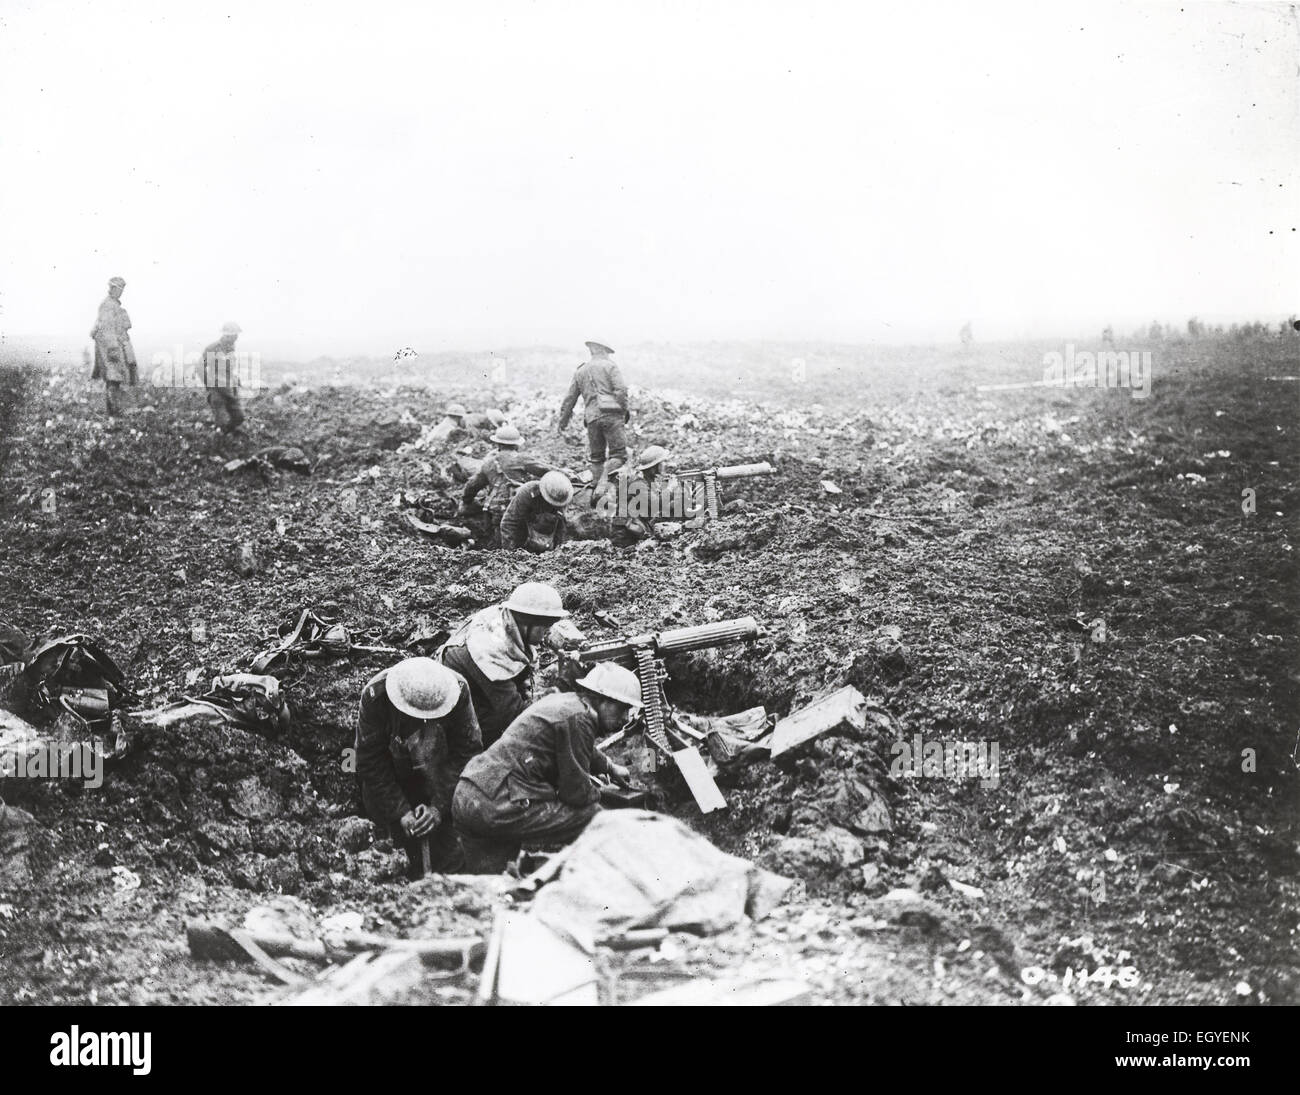 Am ersten Weltkrieg Schlacht von Vimy Ridge 1917. Kanadische Maschine "Gunners" Dif selbst in Granattrichter. Foto: Kanadische Abteilung der nationalen Verteidigung Stockfoto